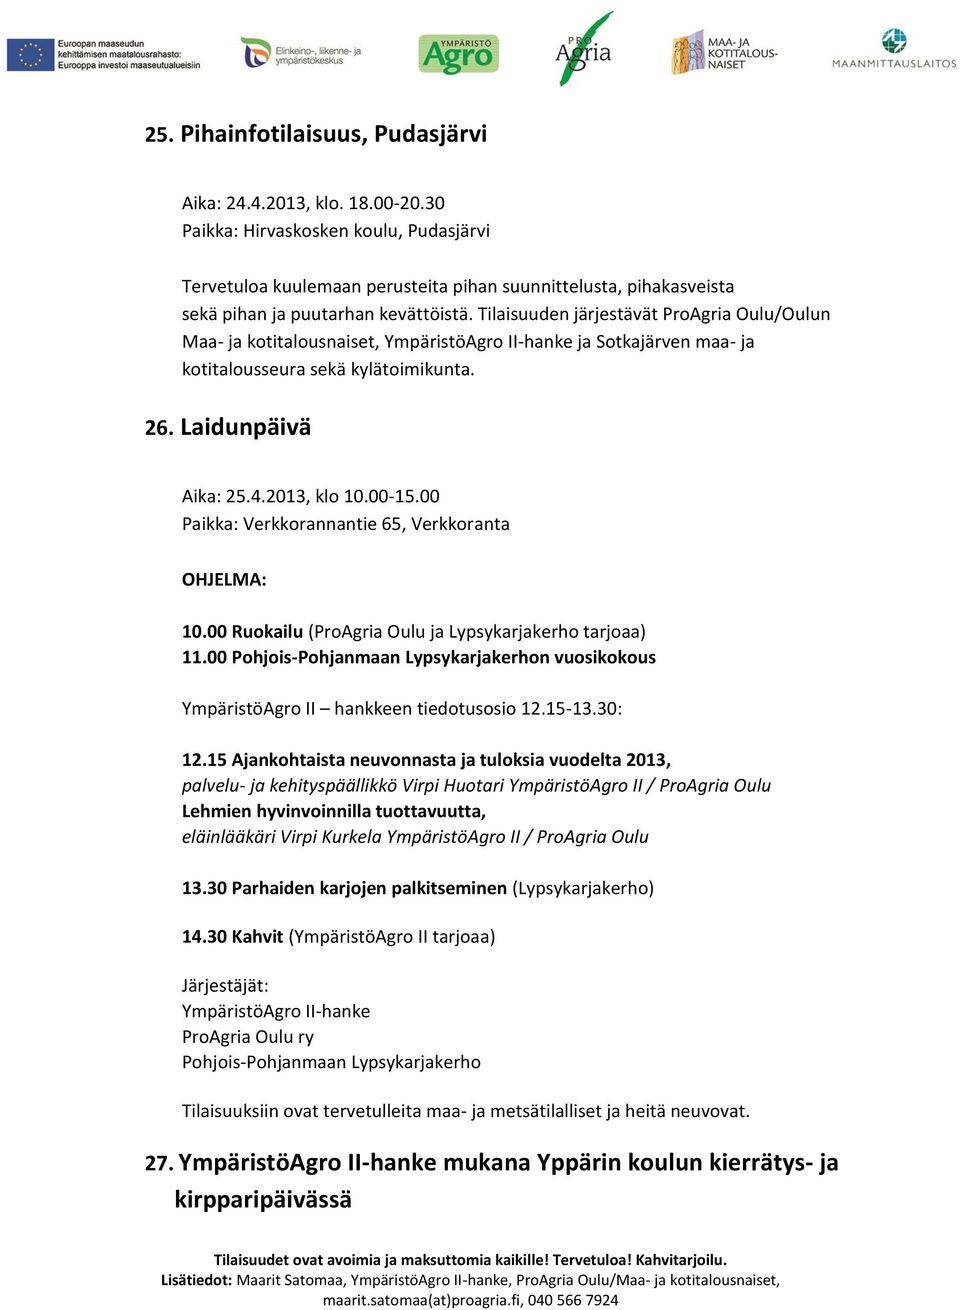 Tilaisuuden järjestävät ProAgria Oulu/Oulun Maa- ja kotitalousnaiset, YmpäristöAgro II-hanke ja Sotkajärven maa- ja kotitalousseura sekä kylätoimikunta. 26. Laidunpäivä Aika: 25.4.2013, klo 10.00-15.